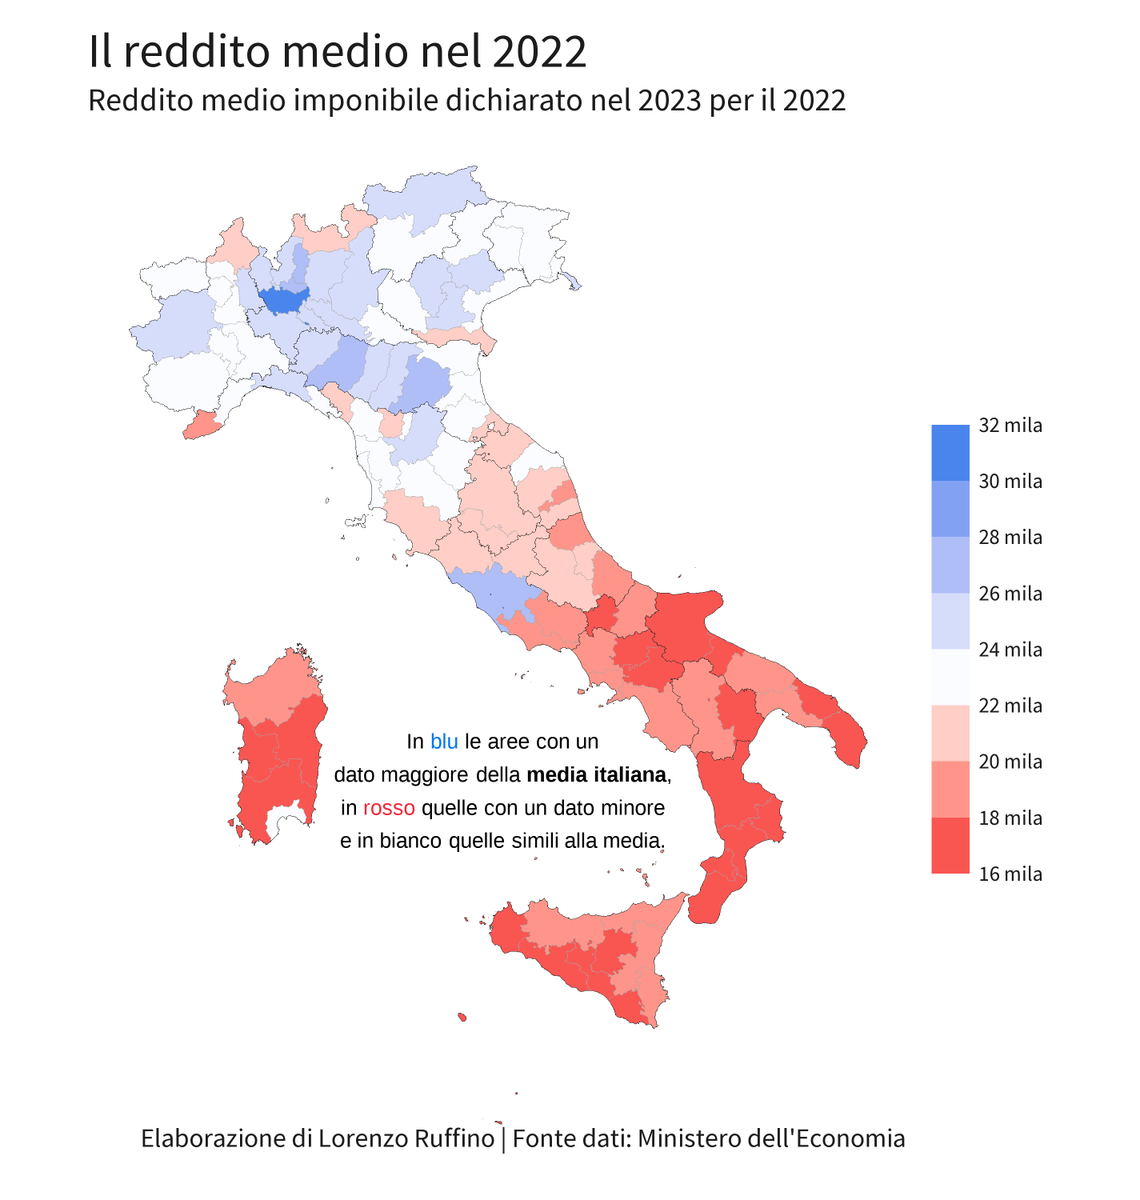 Il reddito medio imponibile dichiarato per il 2022 è di 22.800 euro. A Milano è quasi il doppio di Crotone o Vibo Valentia. Tutte le province del Centro e del Mezzogiorno sono sotto la media Italia con l'eccezione di Roma. Milano è l'unica provincia sopra i 30 mila.